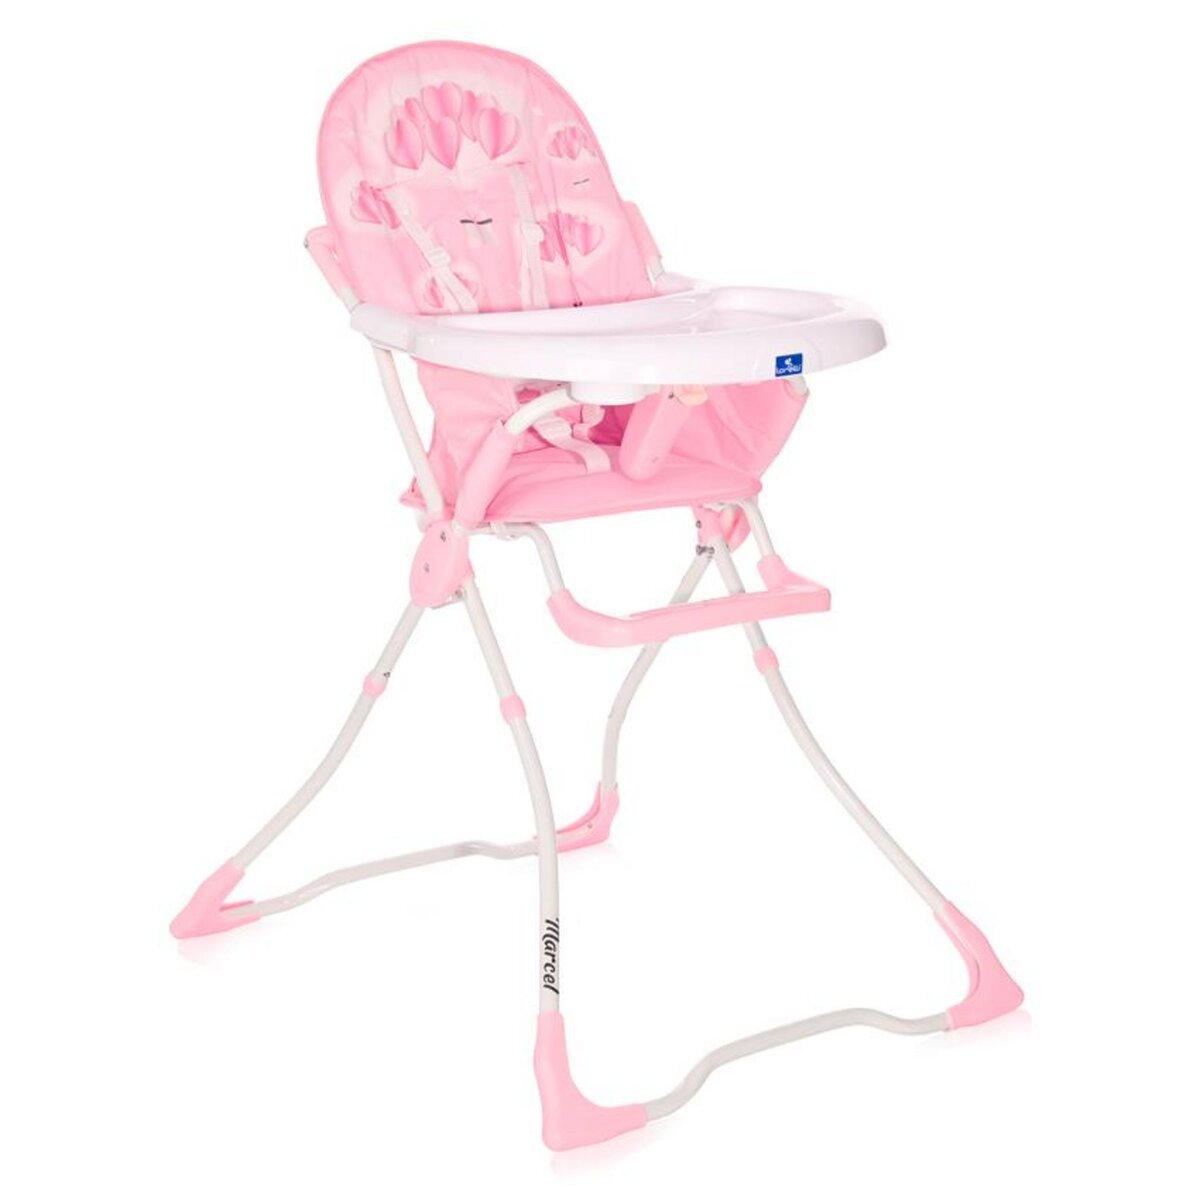 Chaise haute pour bébé Rose et blanc